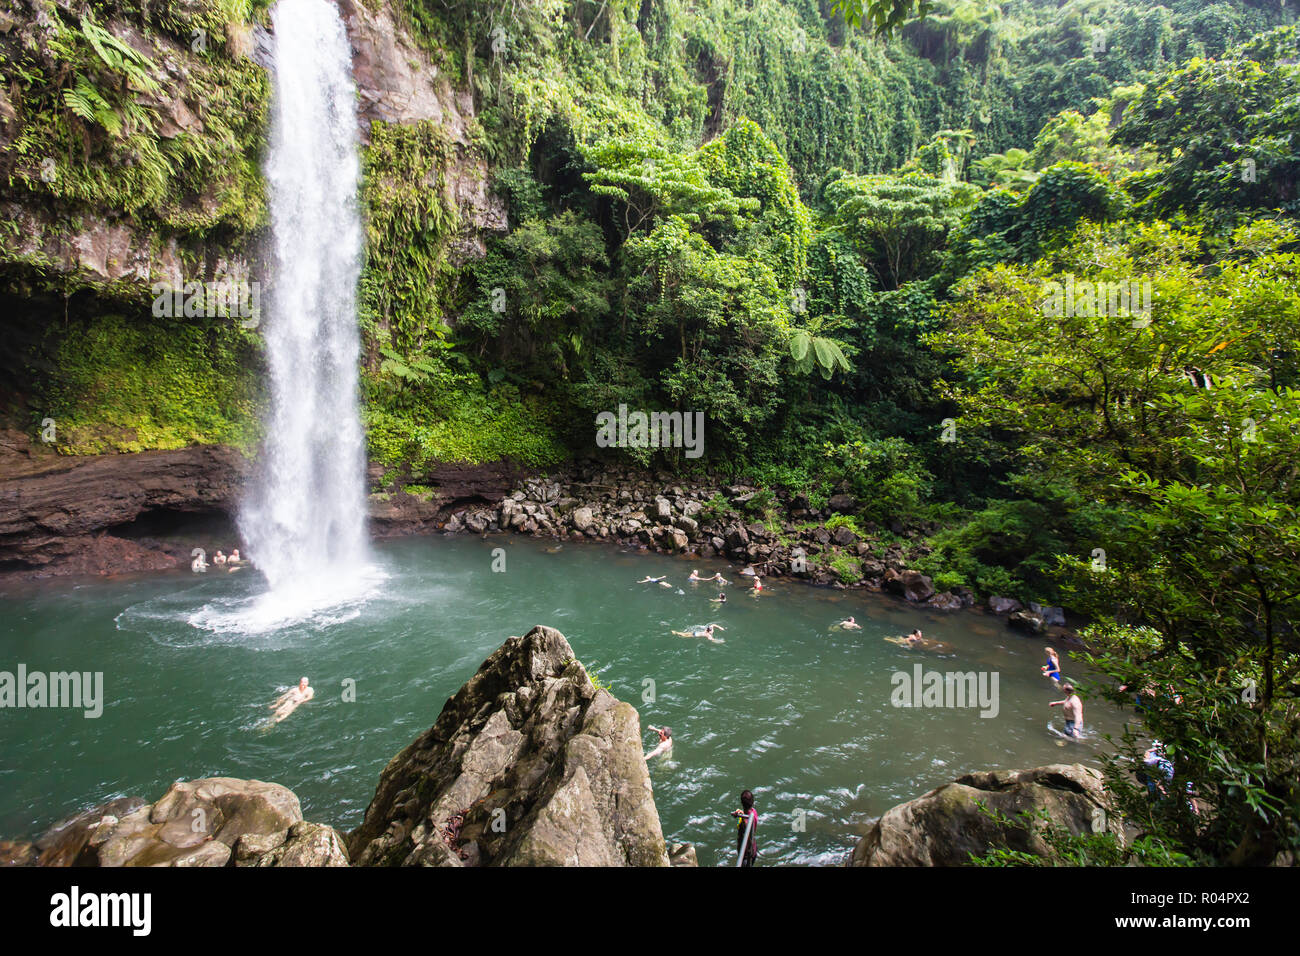 Touristen genießen die erfrischende kühle Wasser eines Wasserfalls auf Taveuni Island, Republik Fidschi, südpazifischen Inseln, Pazifik Stockfoto